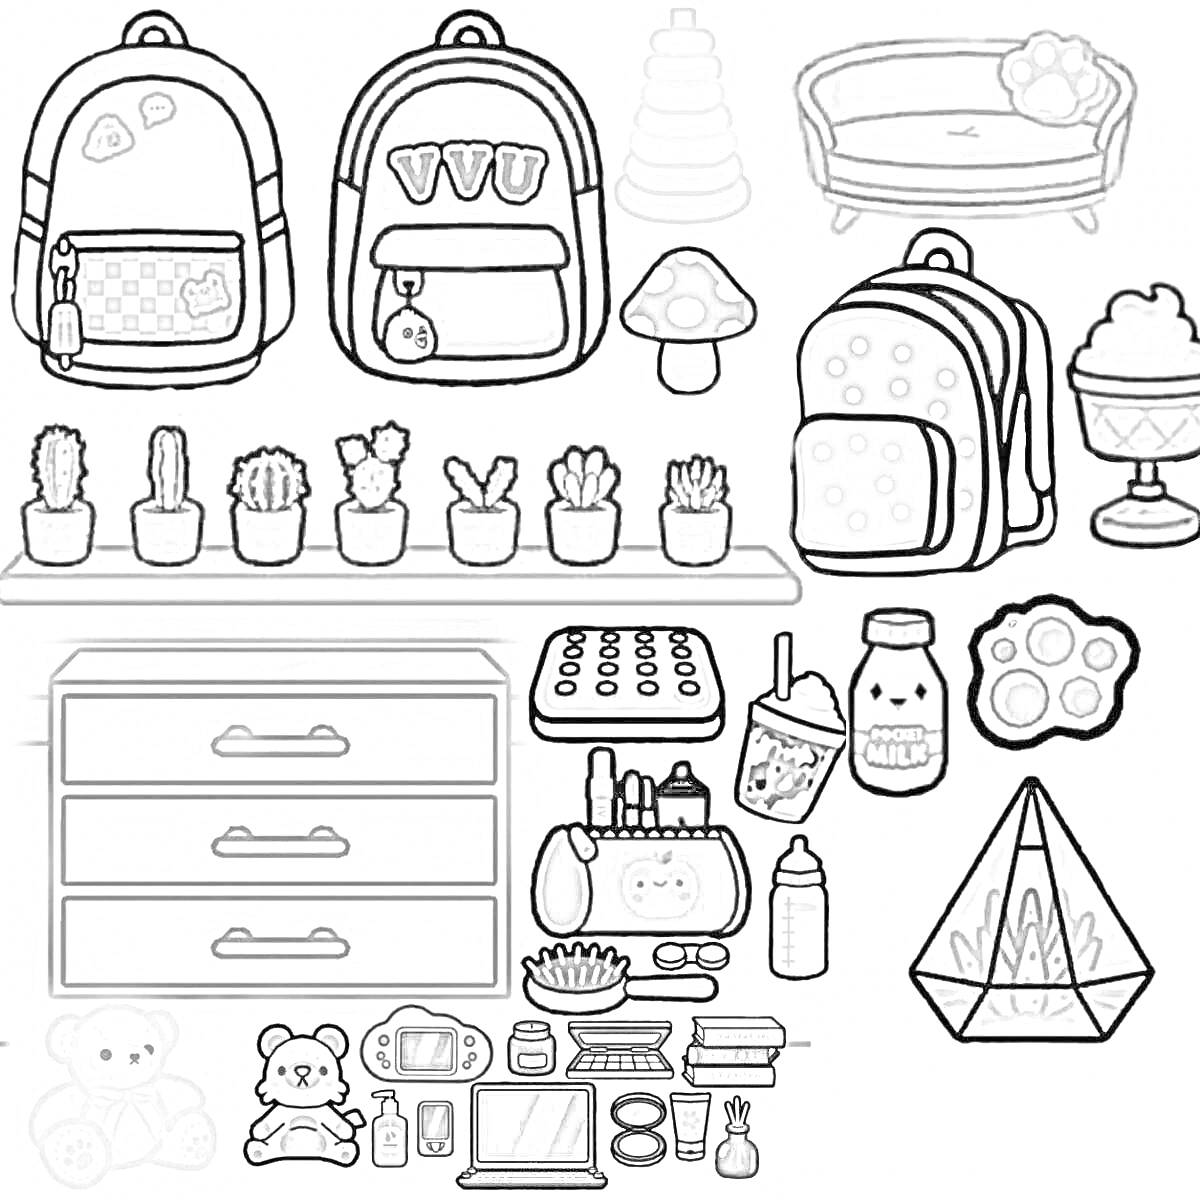 Раскраска Персонажи из Toca Boca с домашними предметами: рюкзаки, кактусы, шезлонг, игрушки и аксессуары